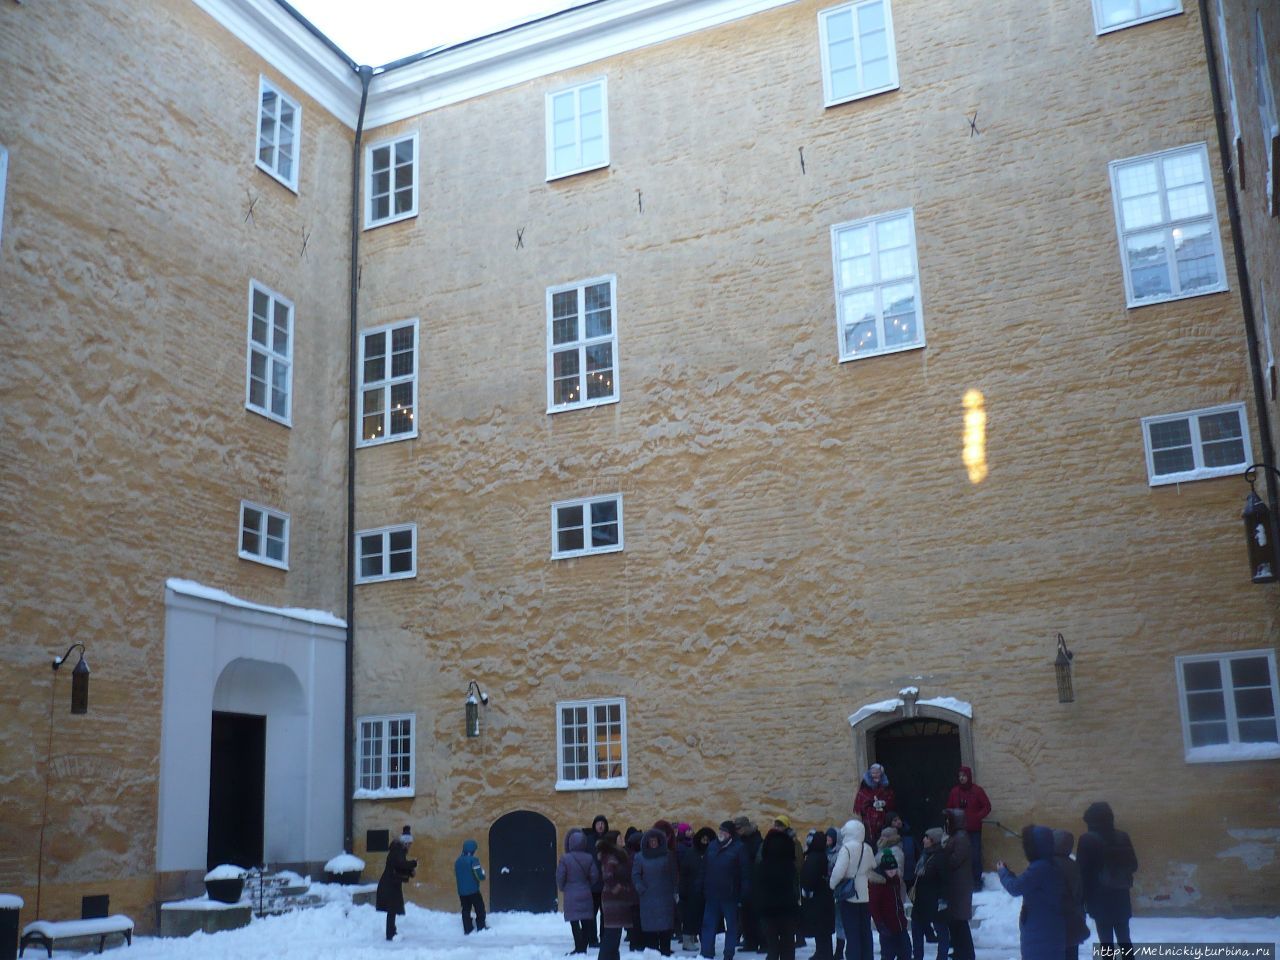 Замок Эрбихюс Вестерос, Швеция